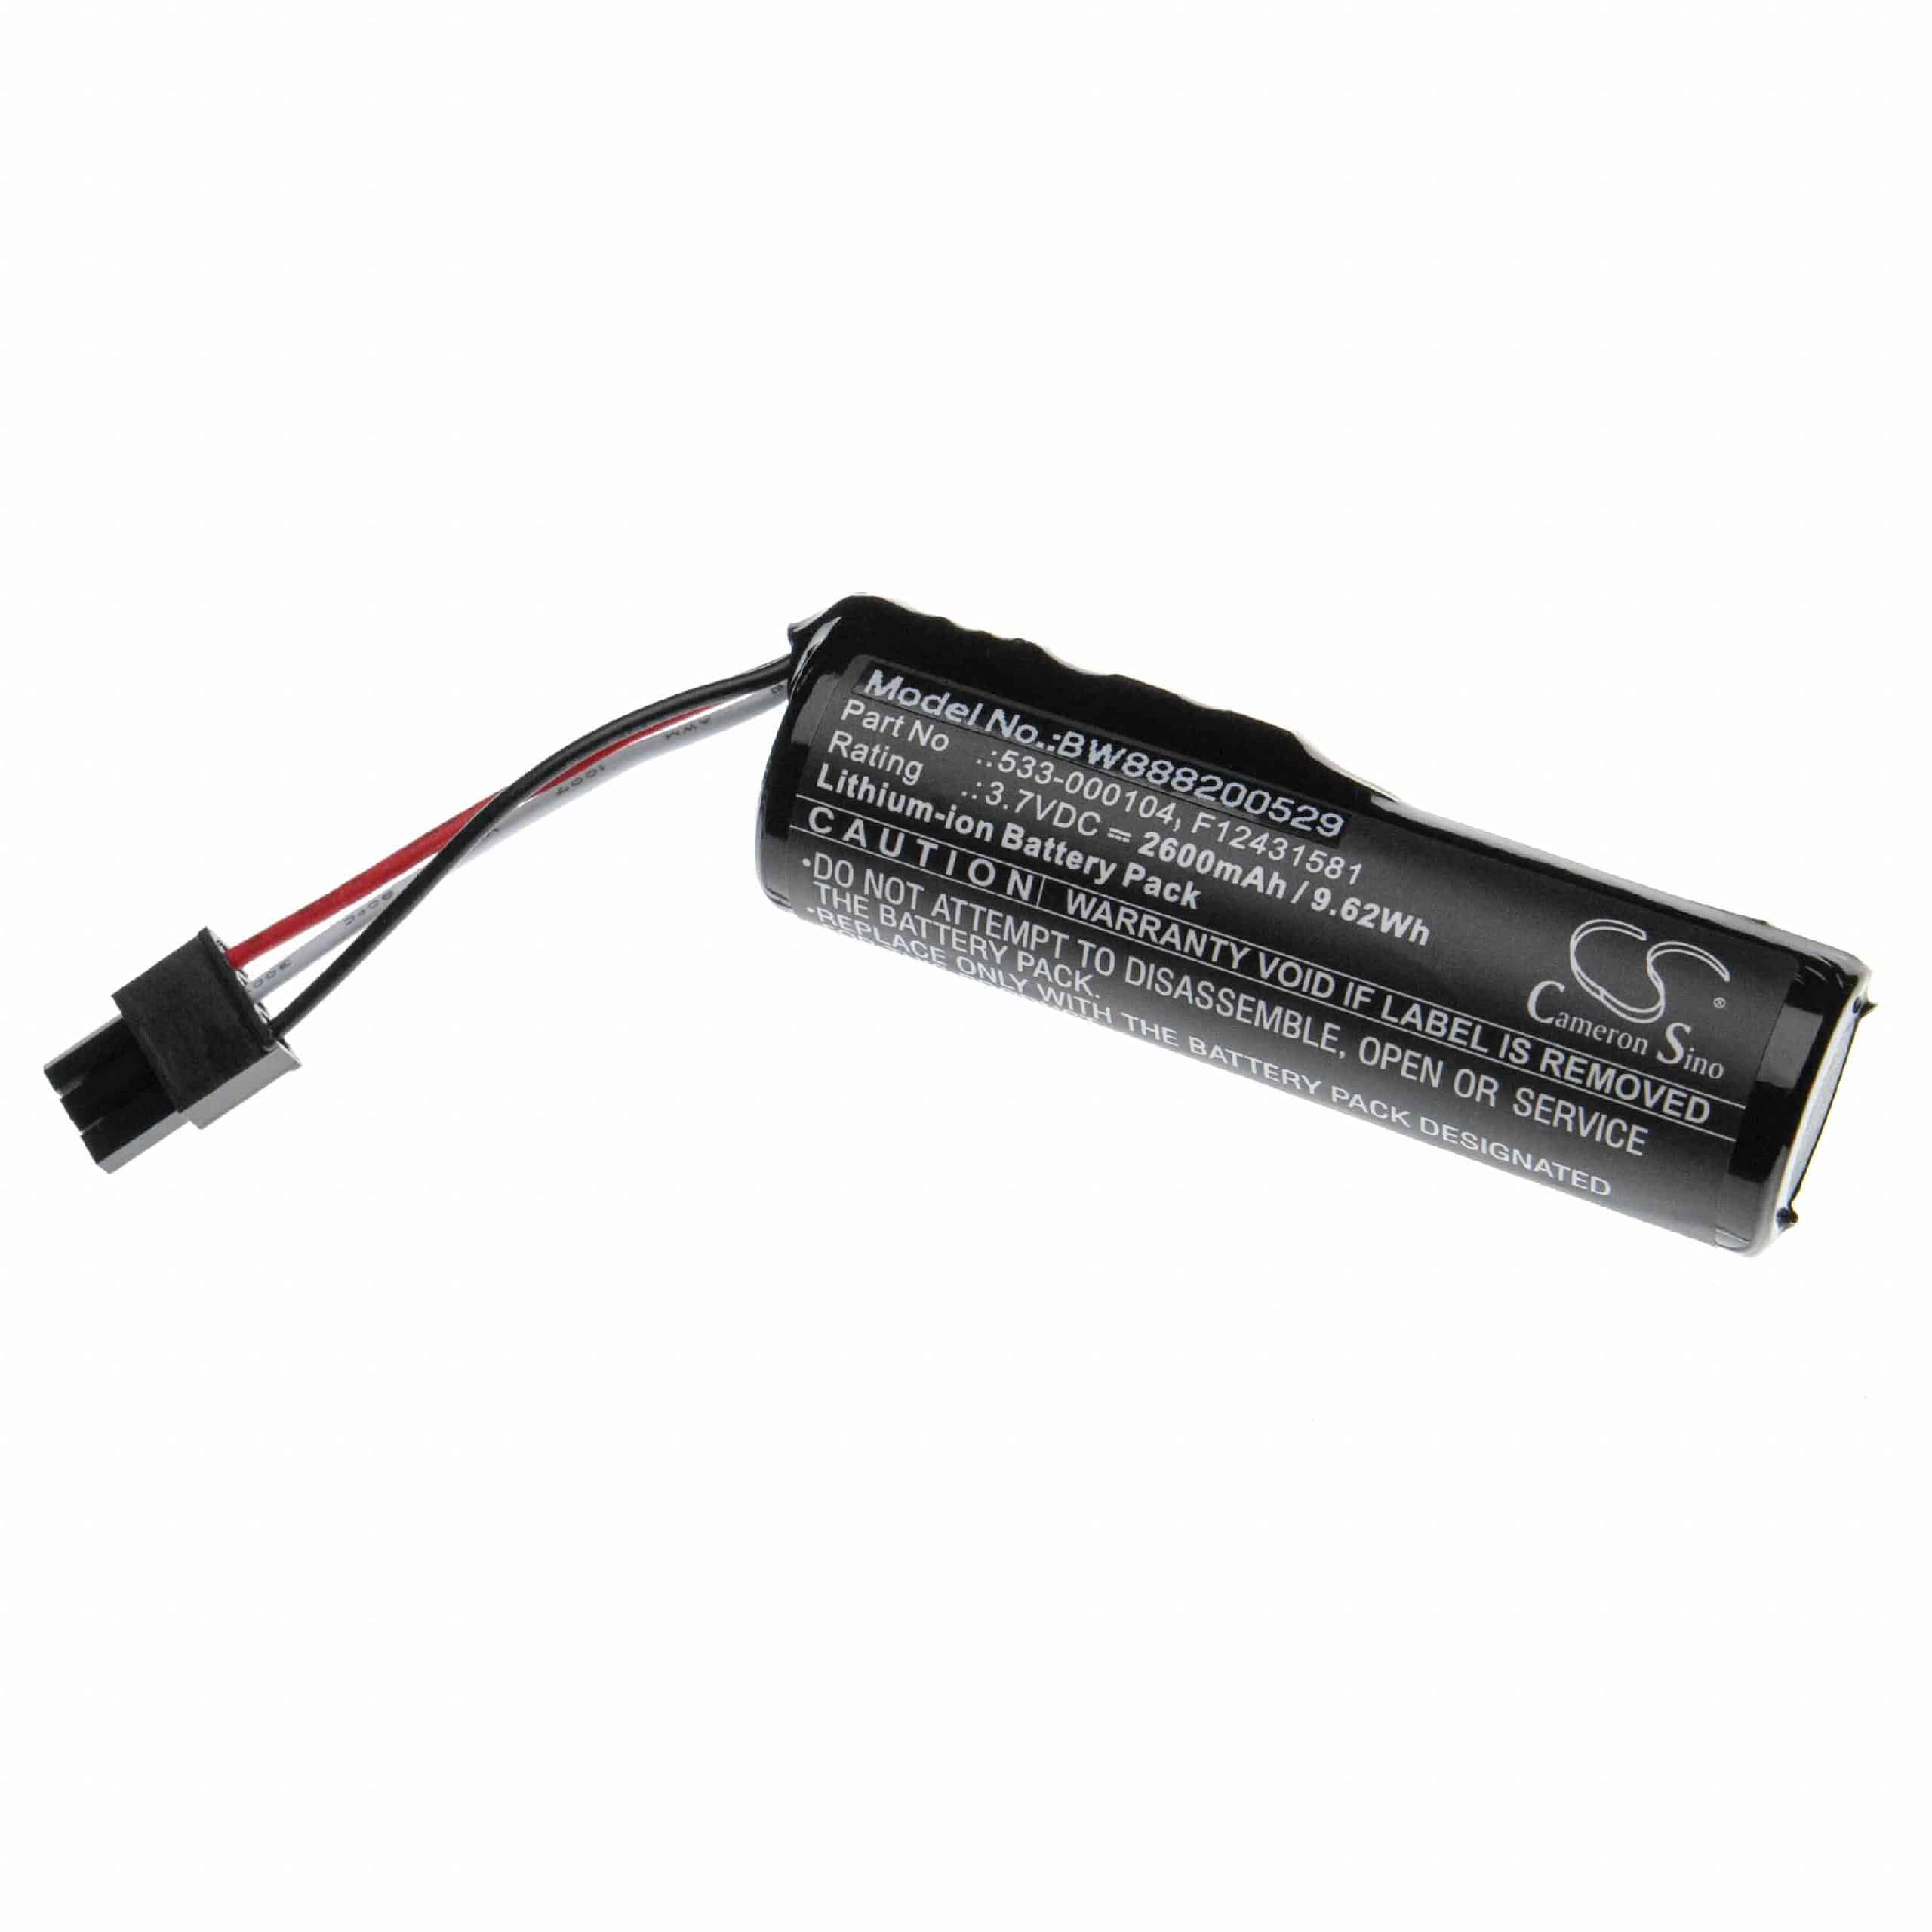 Batteria sostituisce Logitech 533-000104, 533-000138 per altoparlanti Logitech - 2600mAh 3,7V Li-Ion